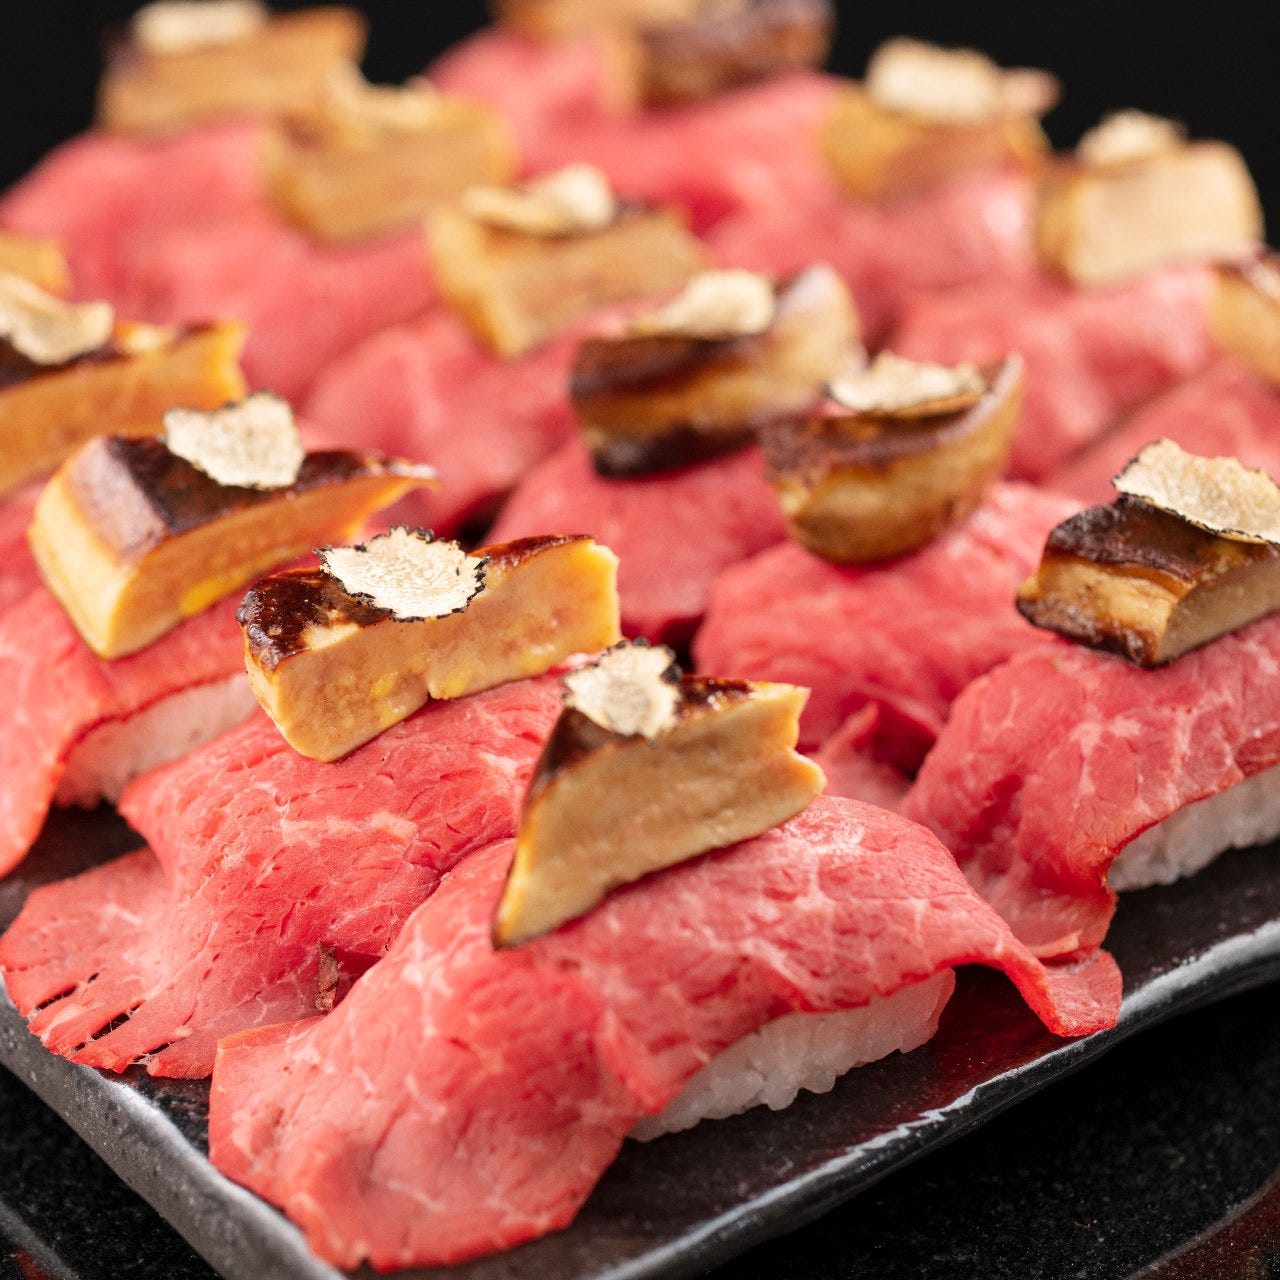 21年 最新グルメ 川崎にある美味しい肉寿司が味わえるお店 レストラン カフェ 居酒屋のネット予約 神奈川版